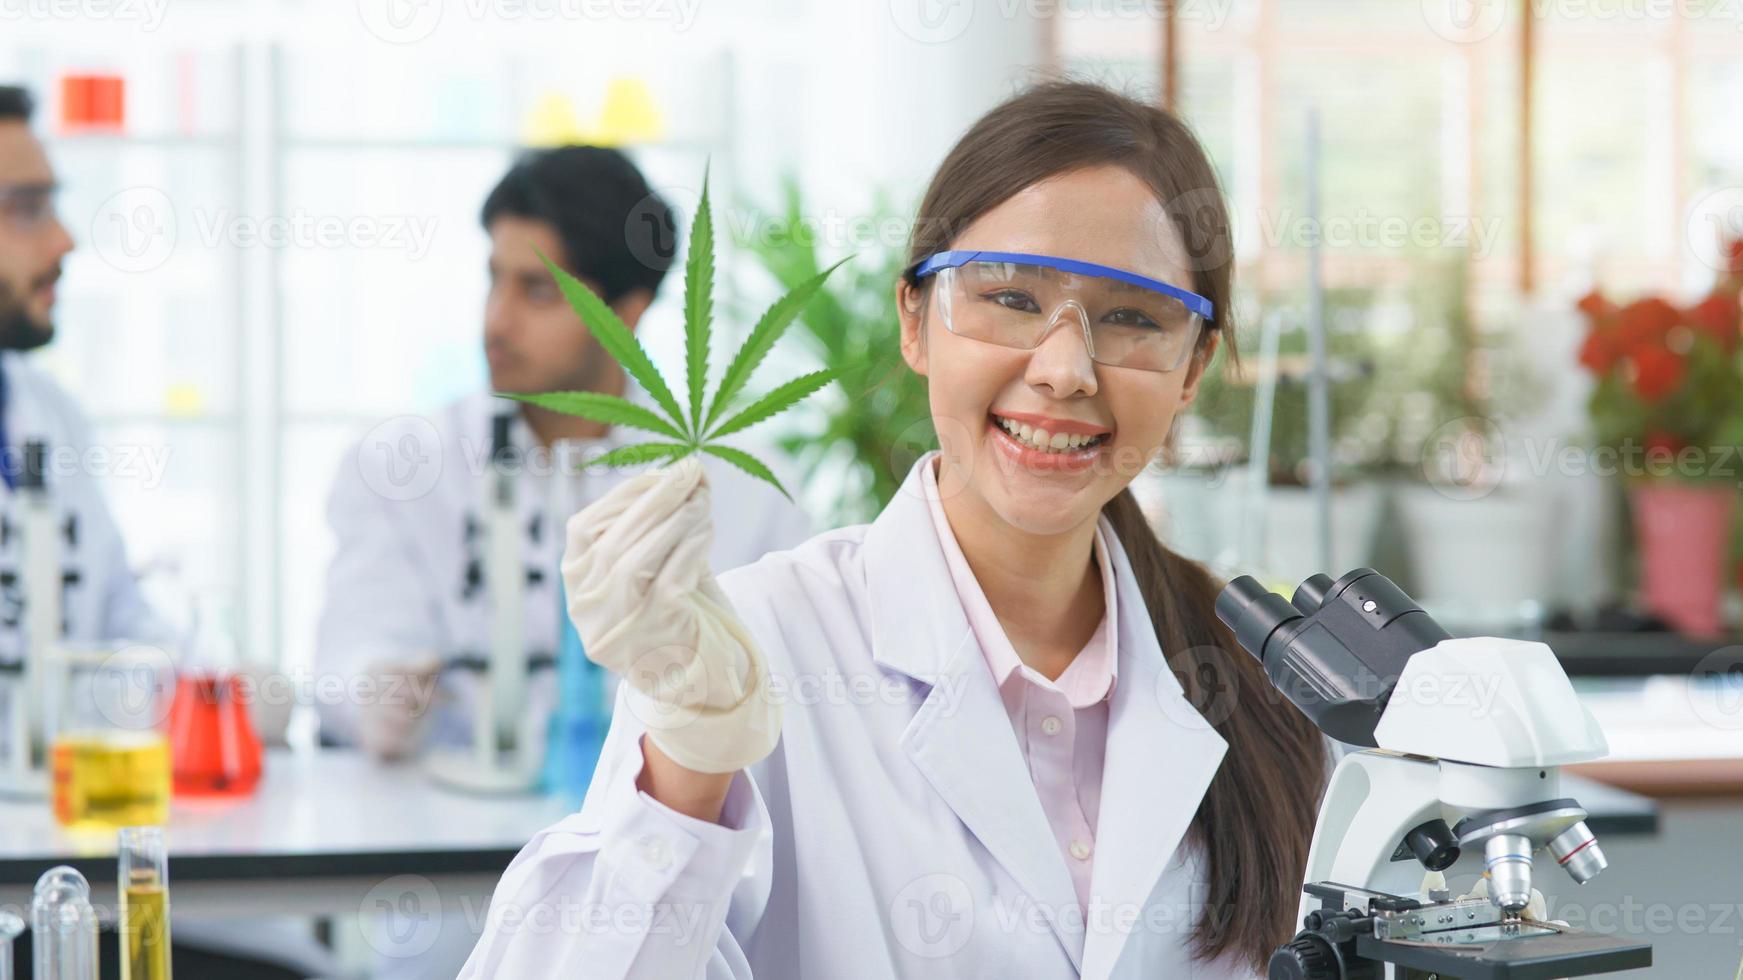 feliz mujer asiática científica sonrisa mirando espectáculo hojas de cannabis investigación cannabis extracto químico alternativo en granja agro laboratorio, farmacéutico mirar microscopio hierba hoja ganja medicina alternativa legal foto